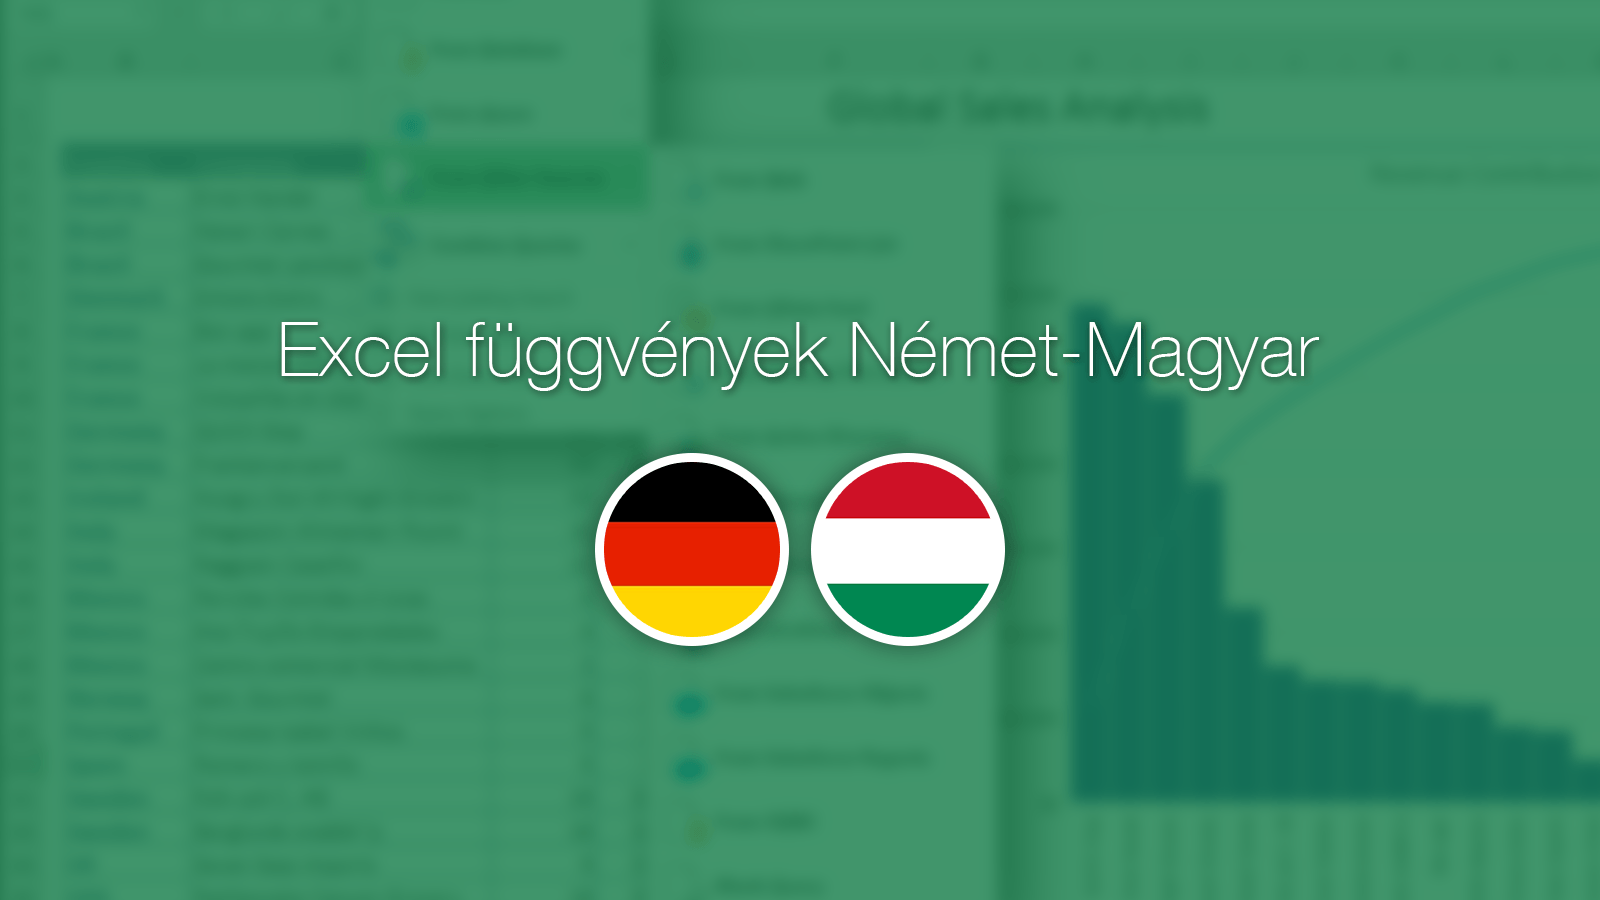 Excel fuggvenyek Nemet-Magyar